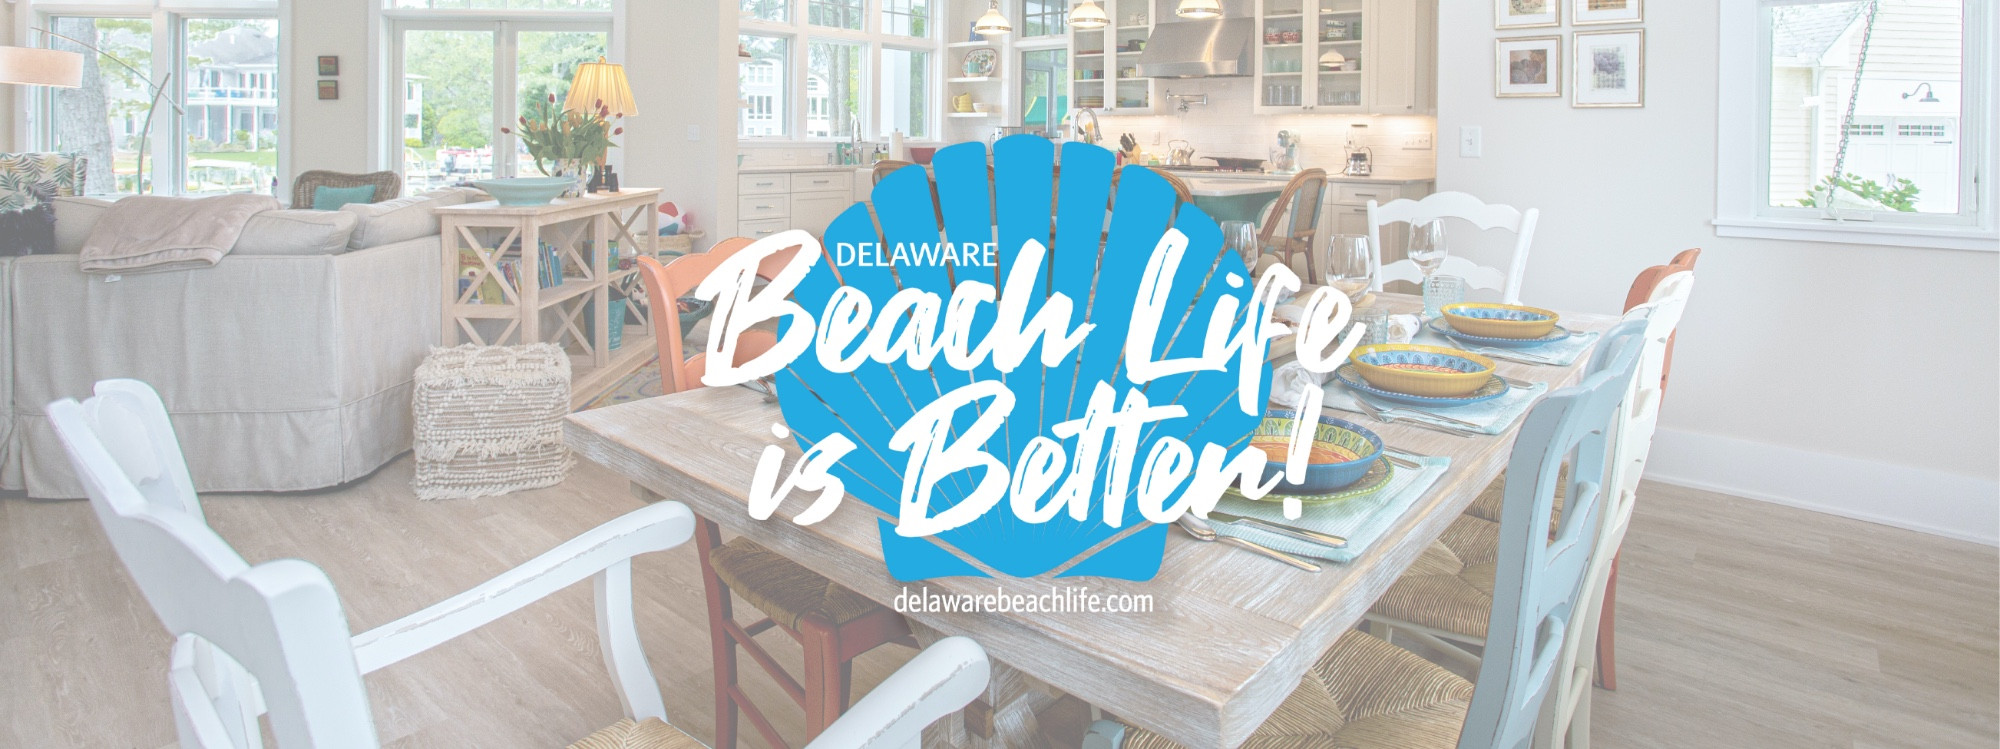 Beach Life is Better Banner 2 01